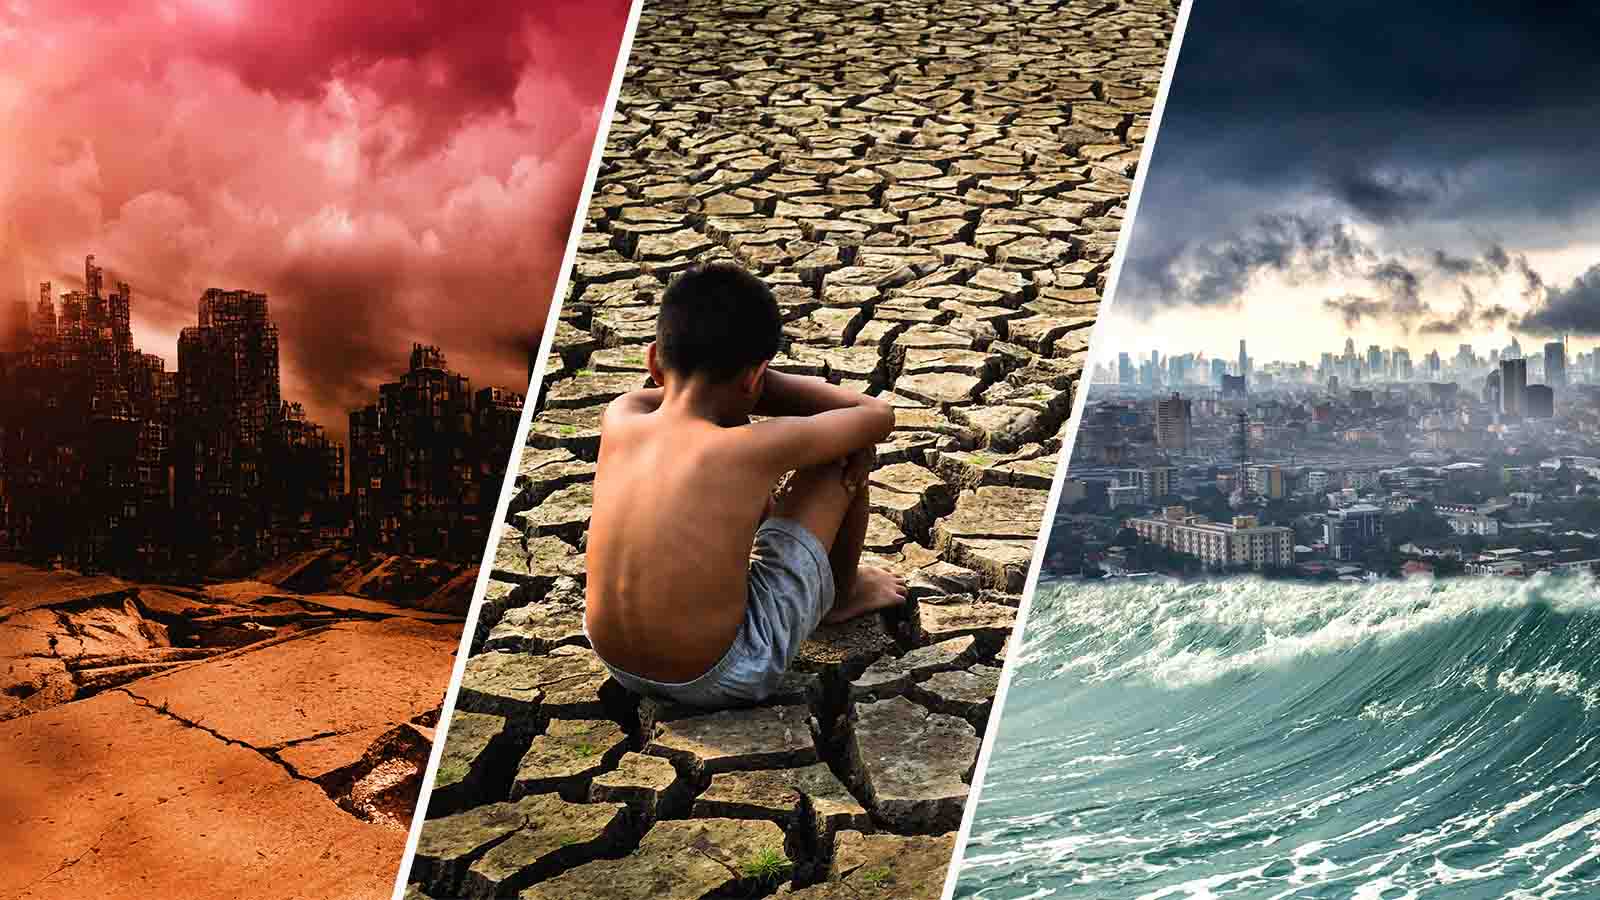 אסונות טבע כתוצאה מההתחממות הגלובאלית (צילום אילוסטרציה: Shutterstock).